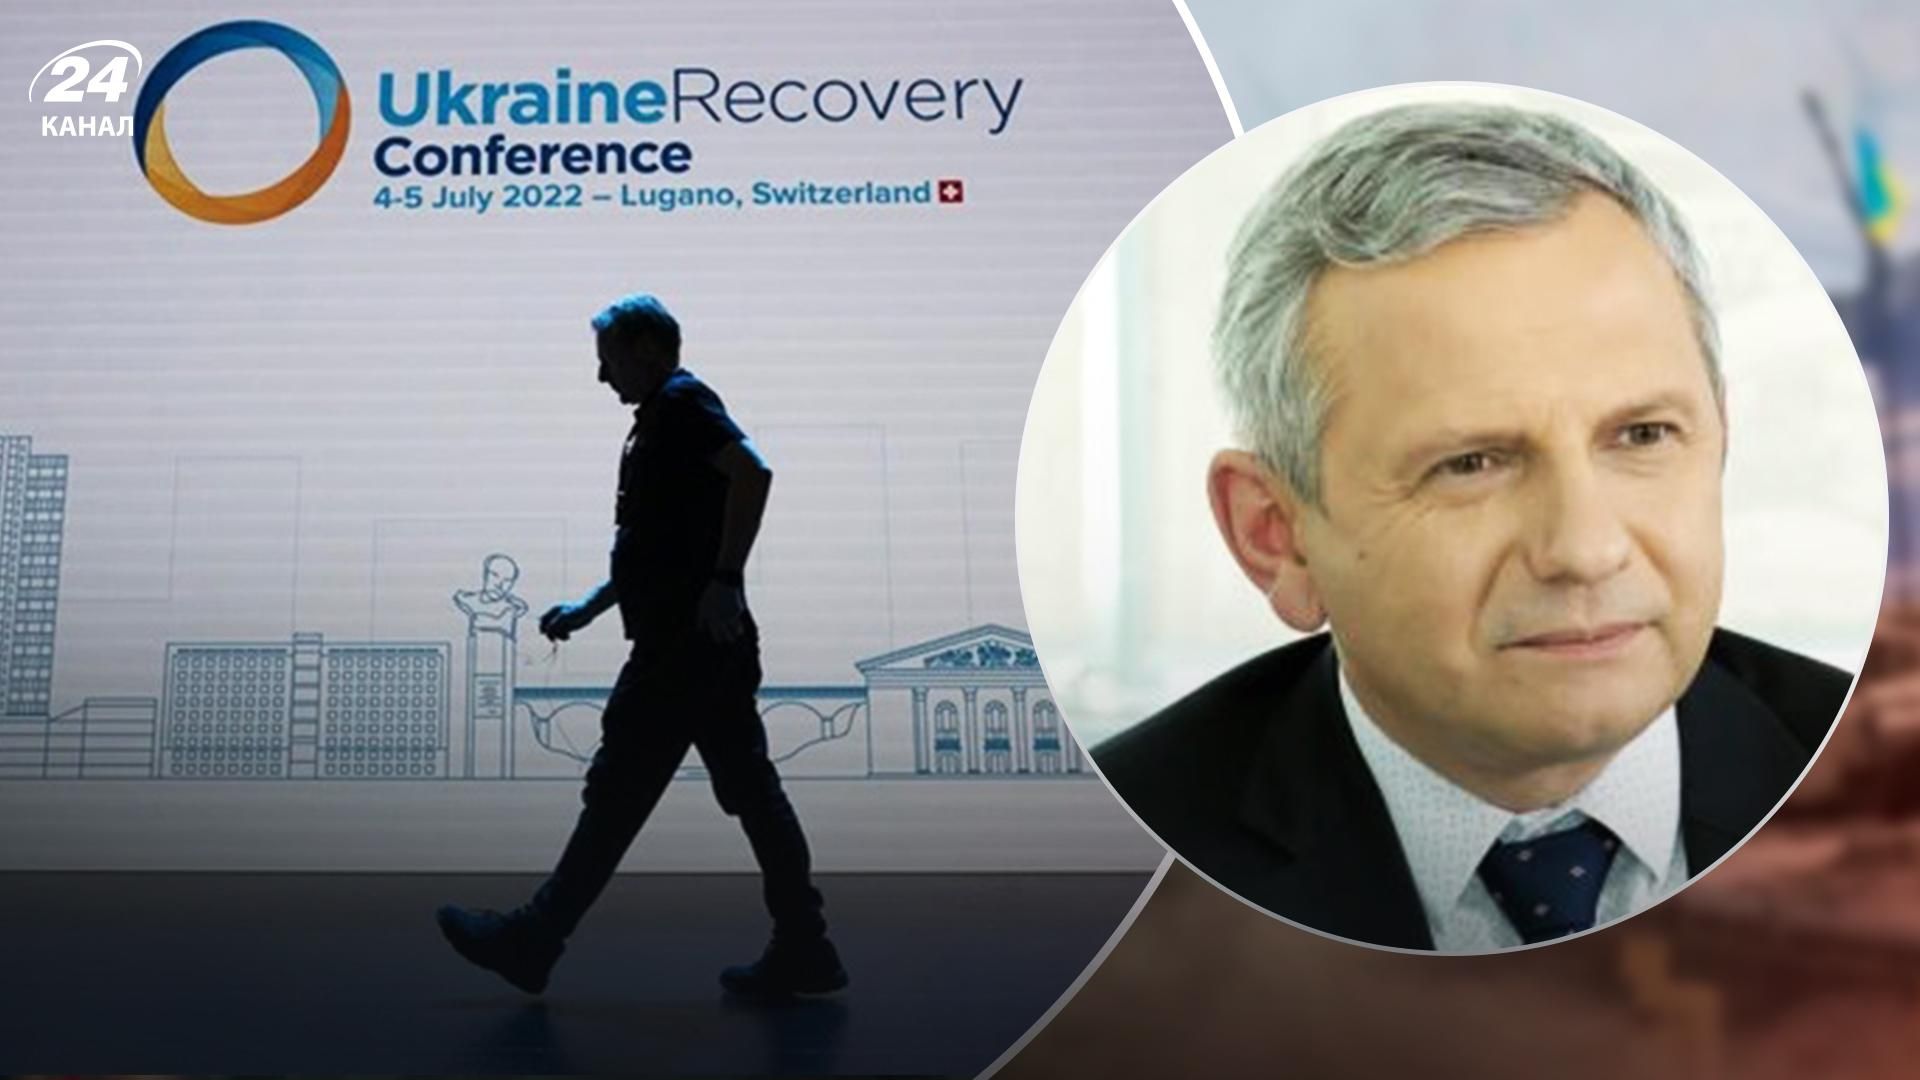 Конференция по восстановлению Украины в Лугано: сколько нужно денег на восстановление - 24 Канал